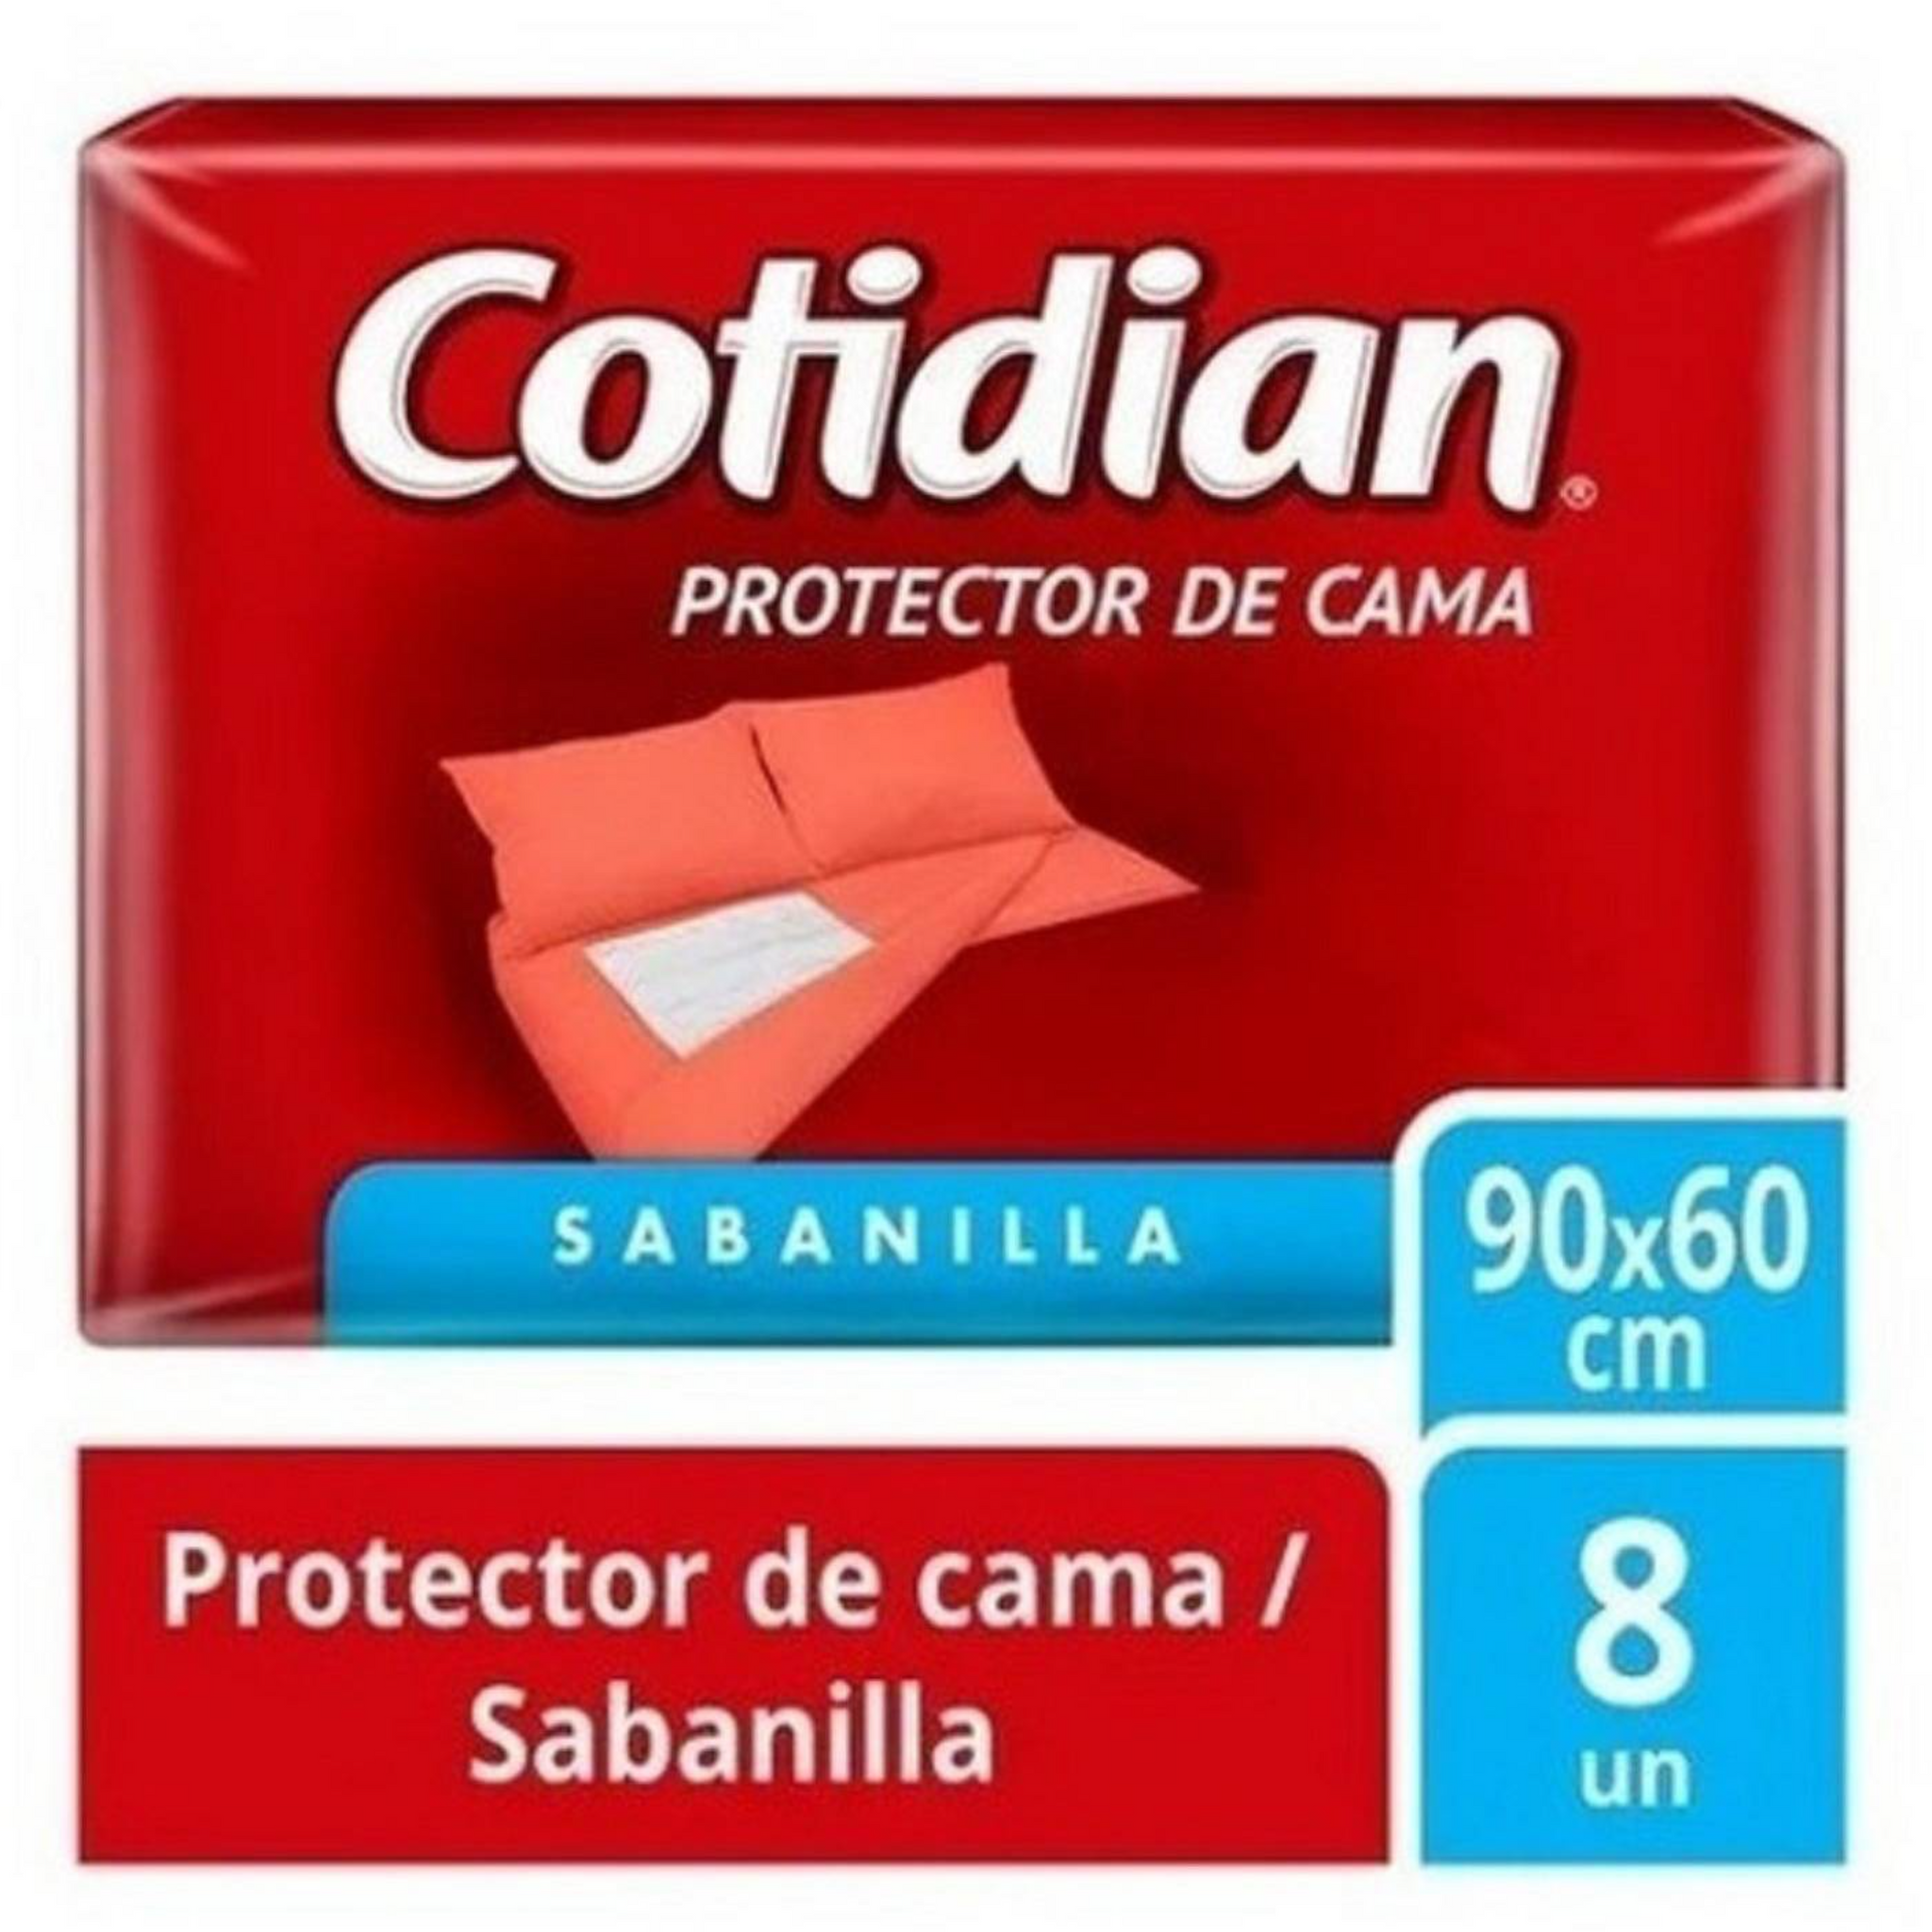 PROTECTOR DE CAMA COTIDIAN TALLA ÚNICA